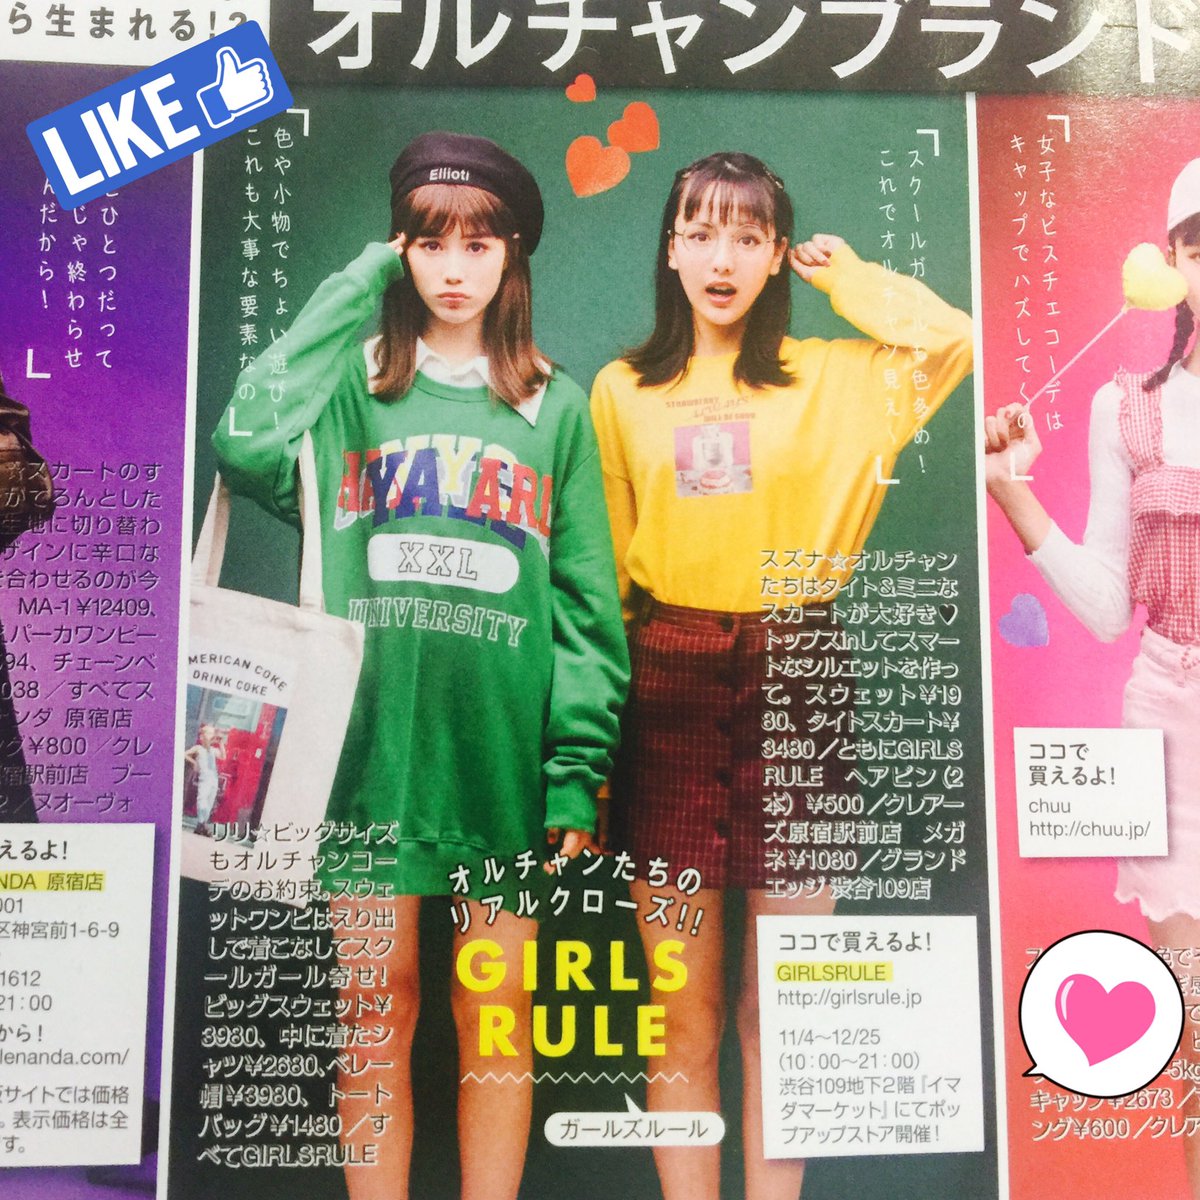 ট ইট র 韓国ファッション Girls Rule 人気雑誌ニコラ12月号掲載 ガールズルールのアイテムでとっても可愛いコーディネートを組んでいただきました ぜひチェックしてみてくださいね T Co Wlydqu2qhb